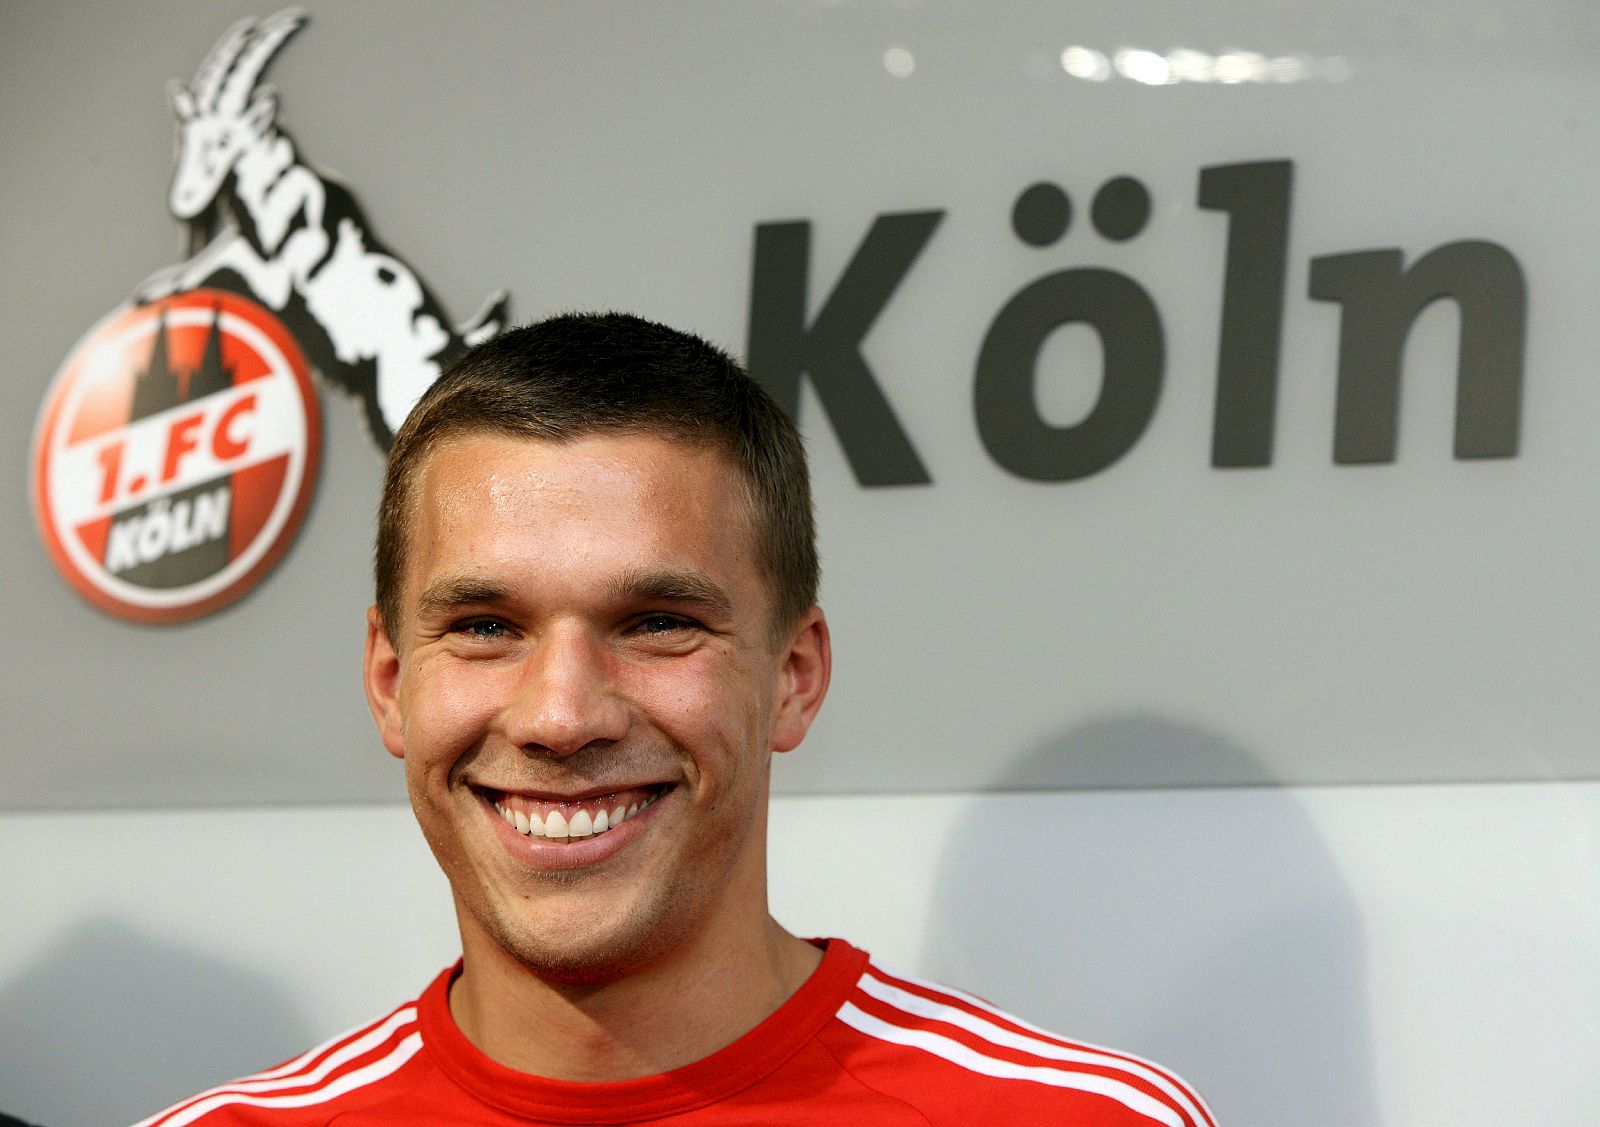 El joven Podolski ha jugado de manera errática en el Bayern de Múnich y regresa al club de sus amores.